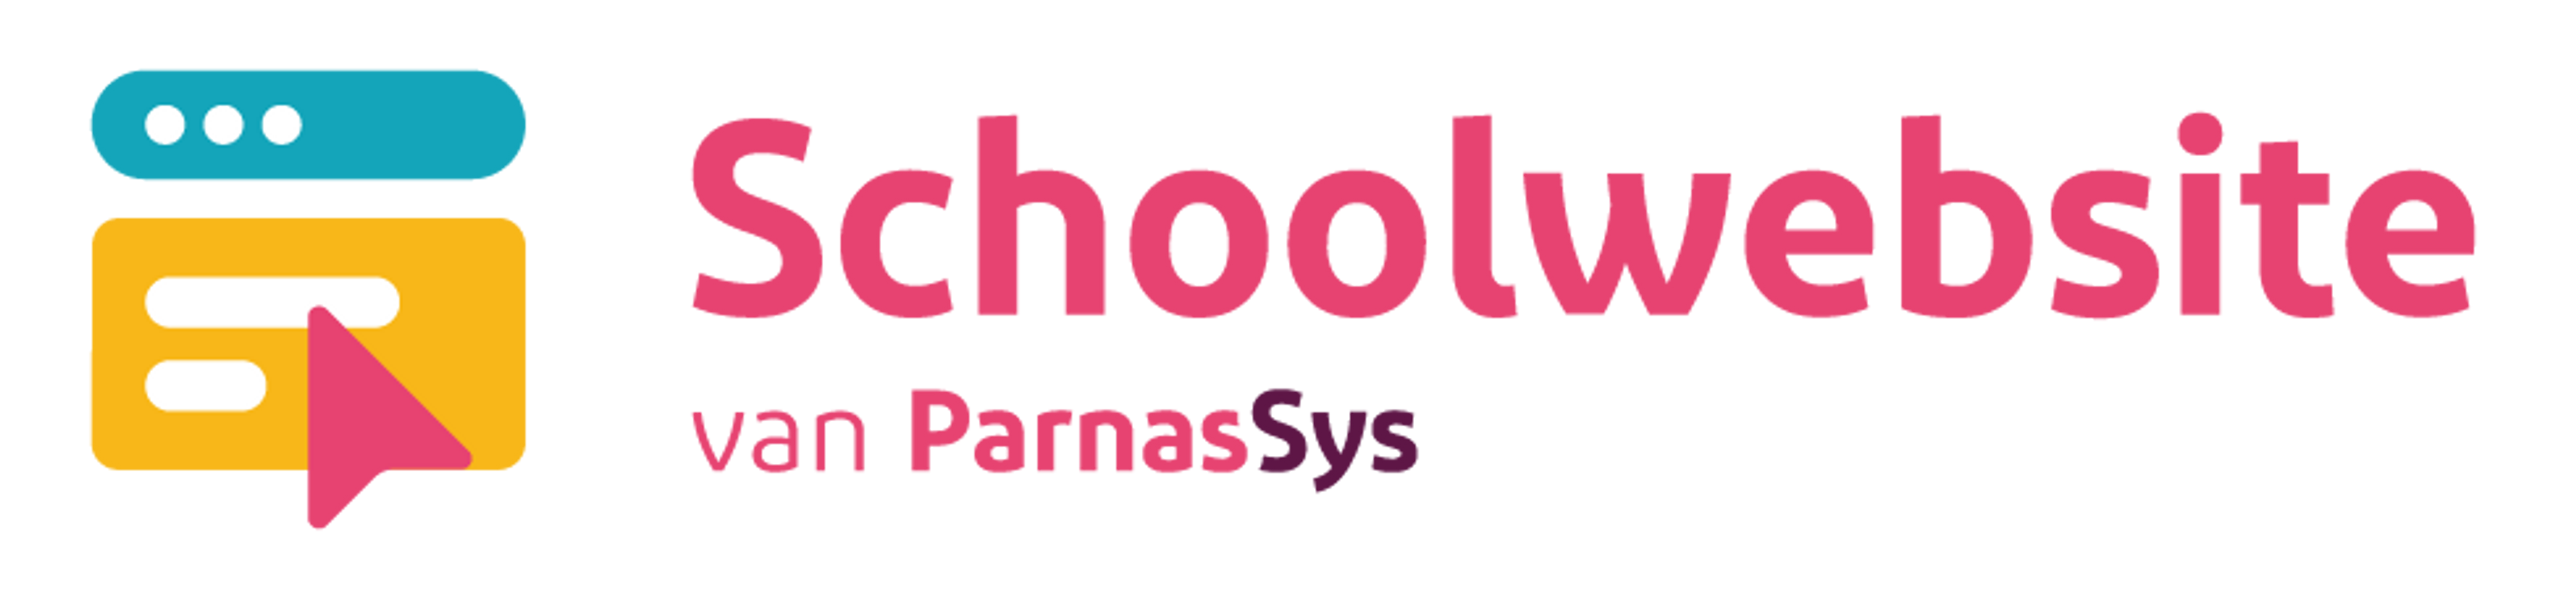 logo Schoolwebsite van ParnasSys